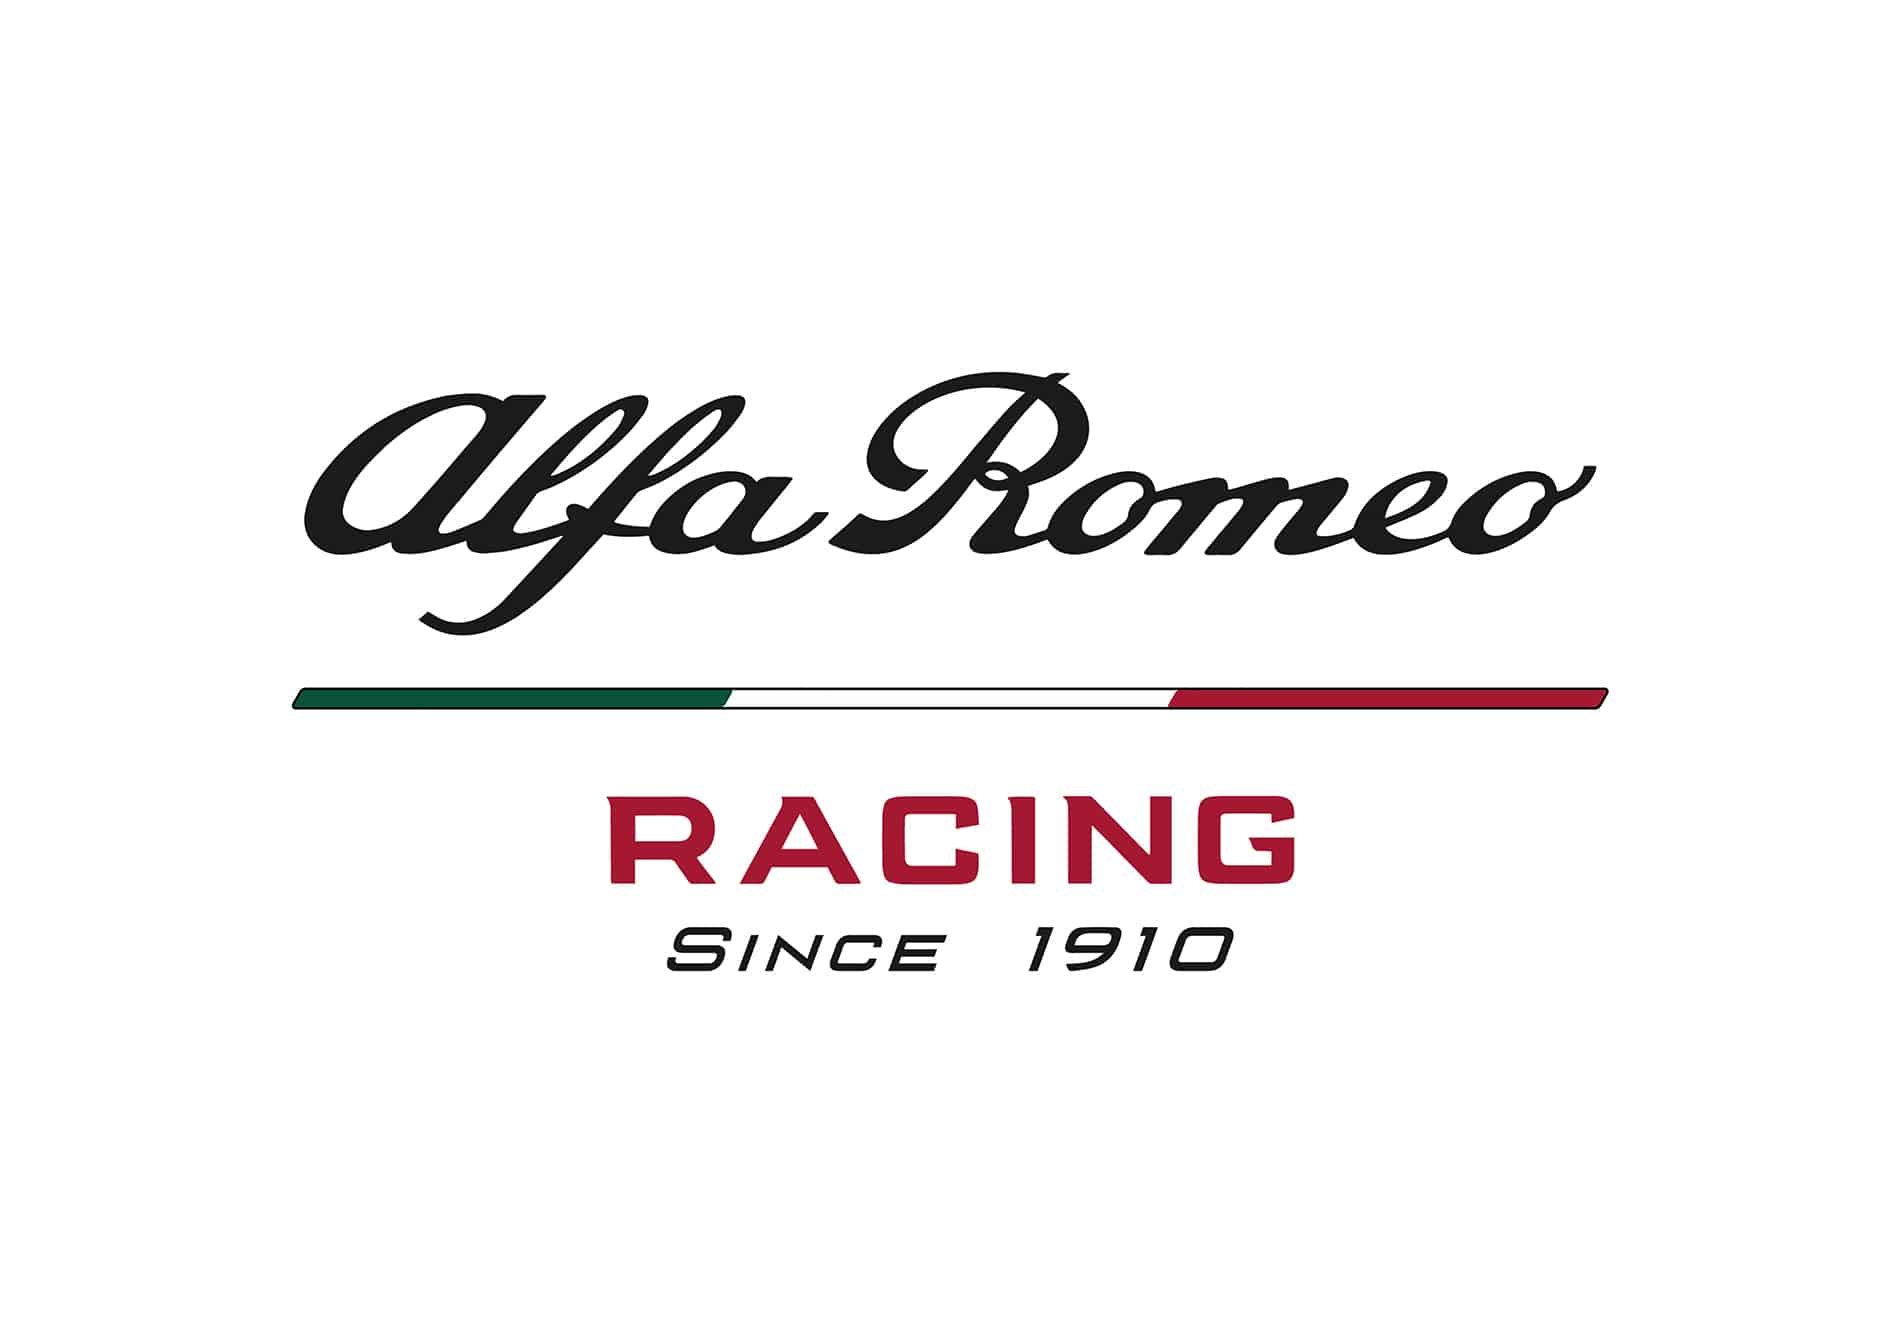 Alfa Romeo i Sauber  - Alfa Romeo Racing